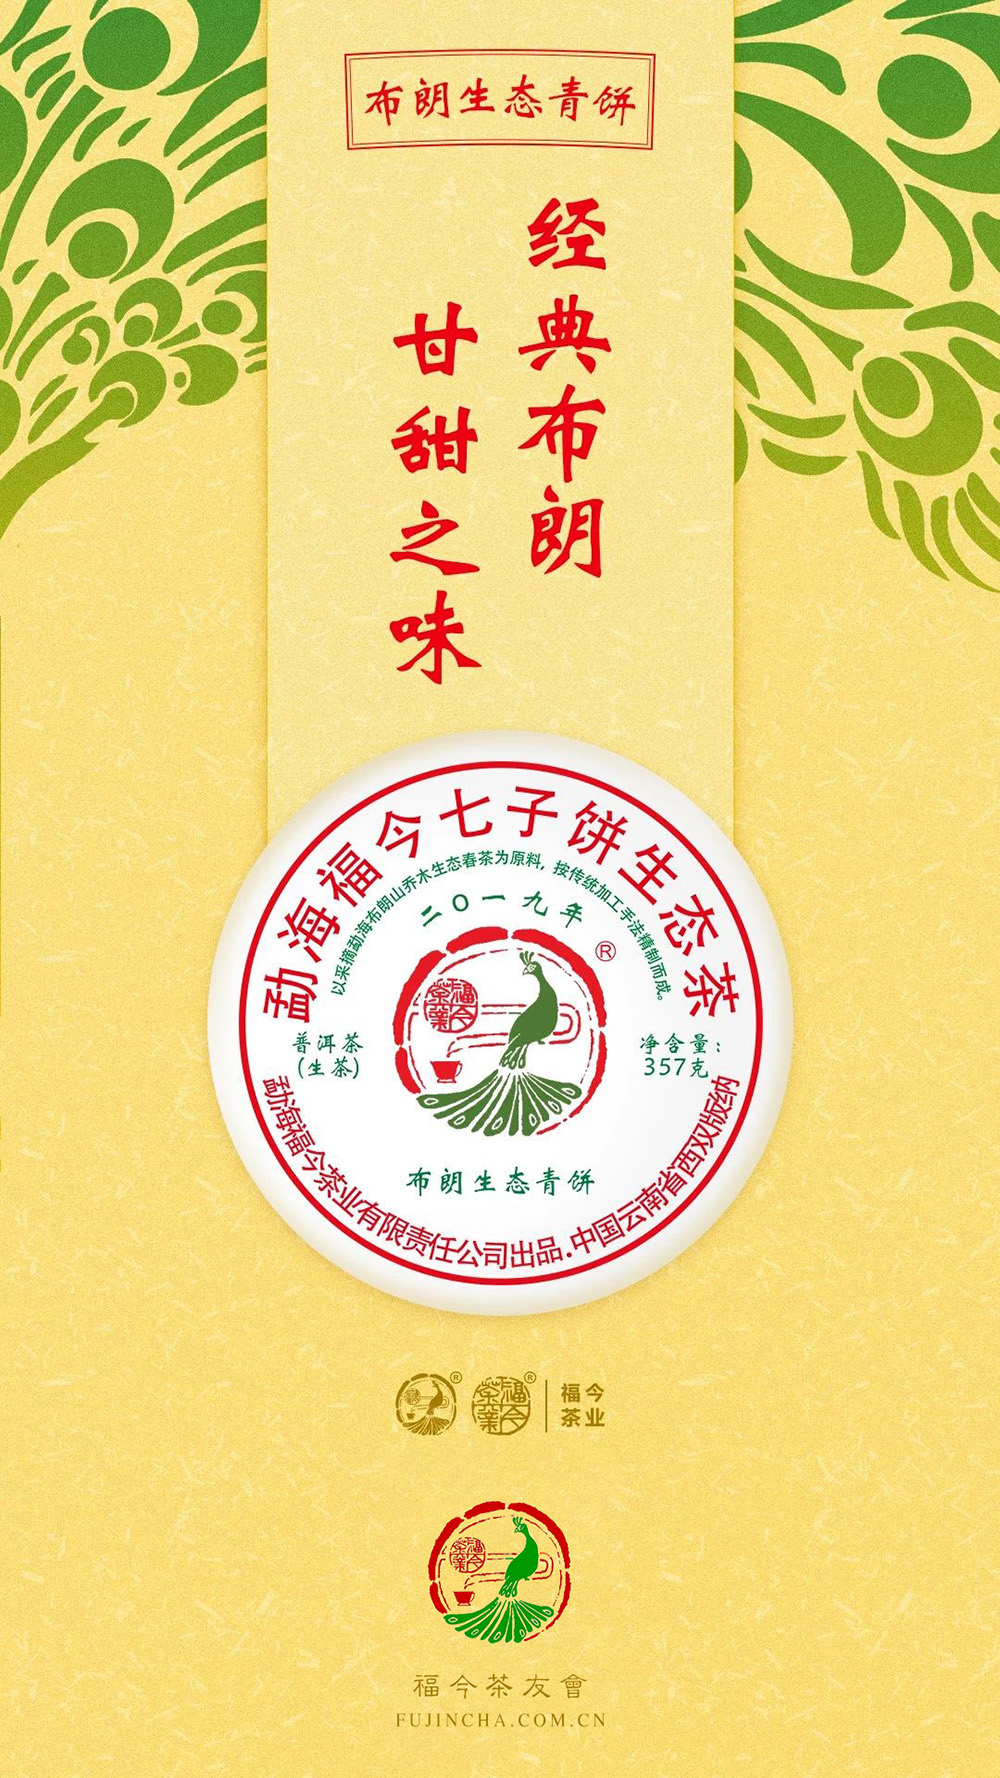 福今2019年布朗生态青饼